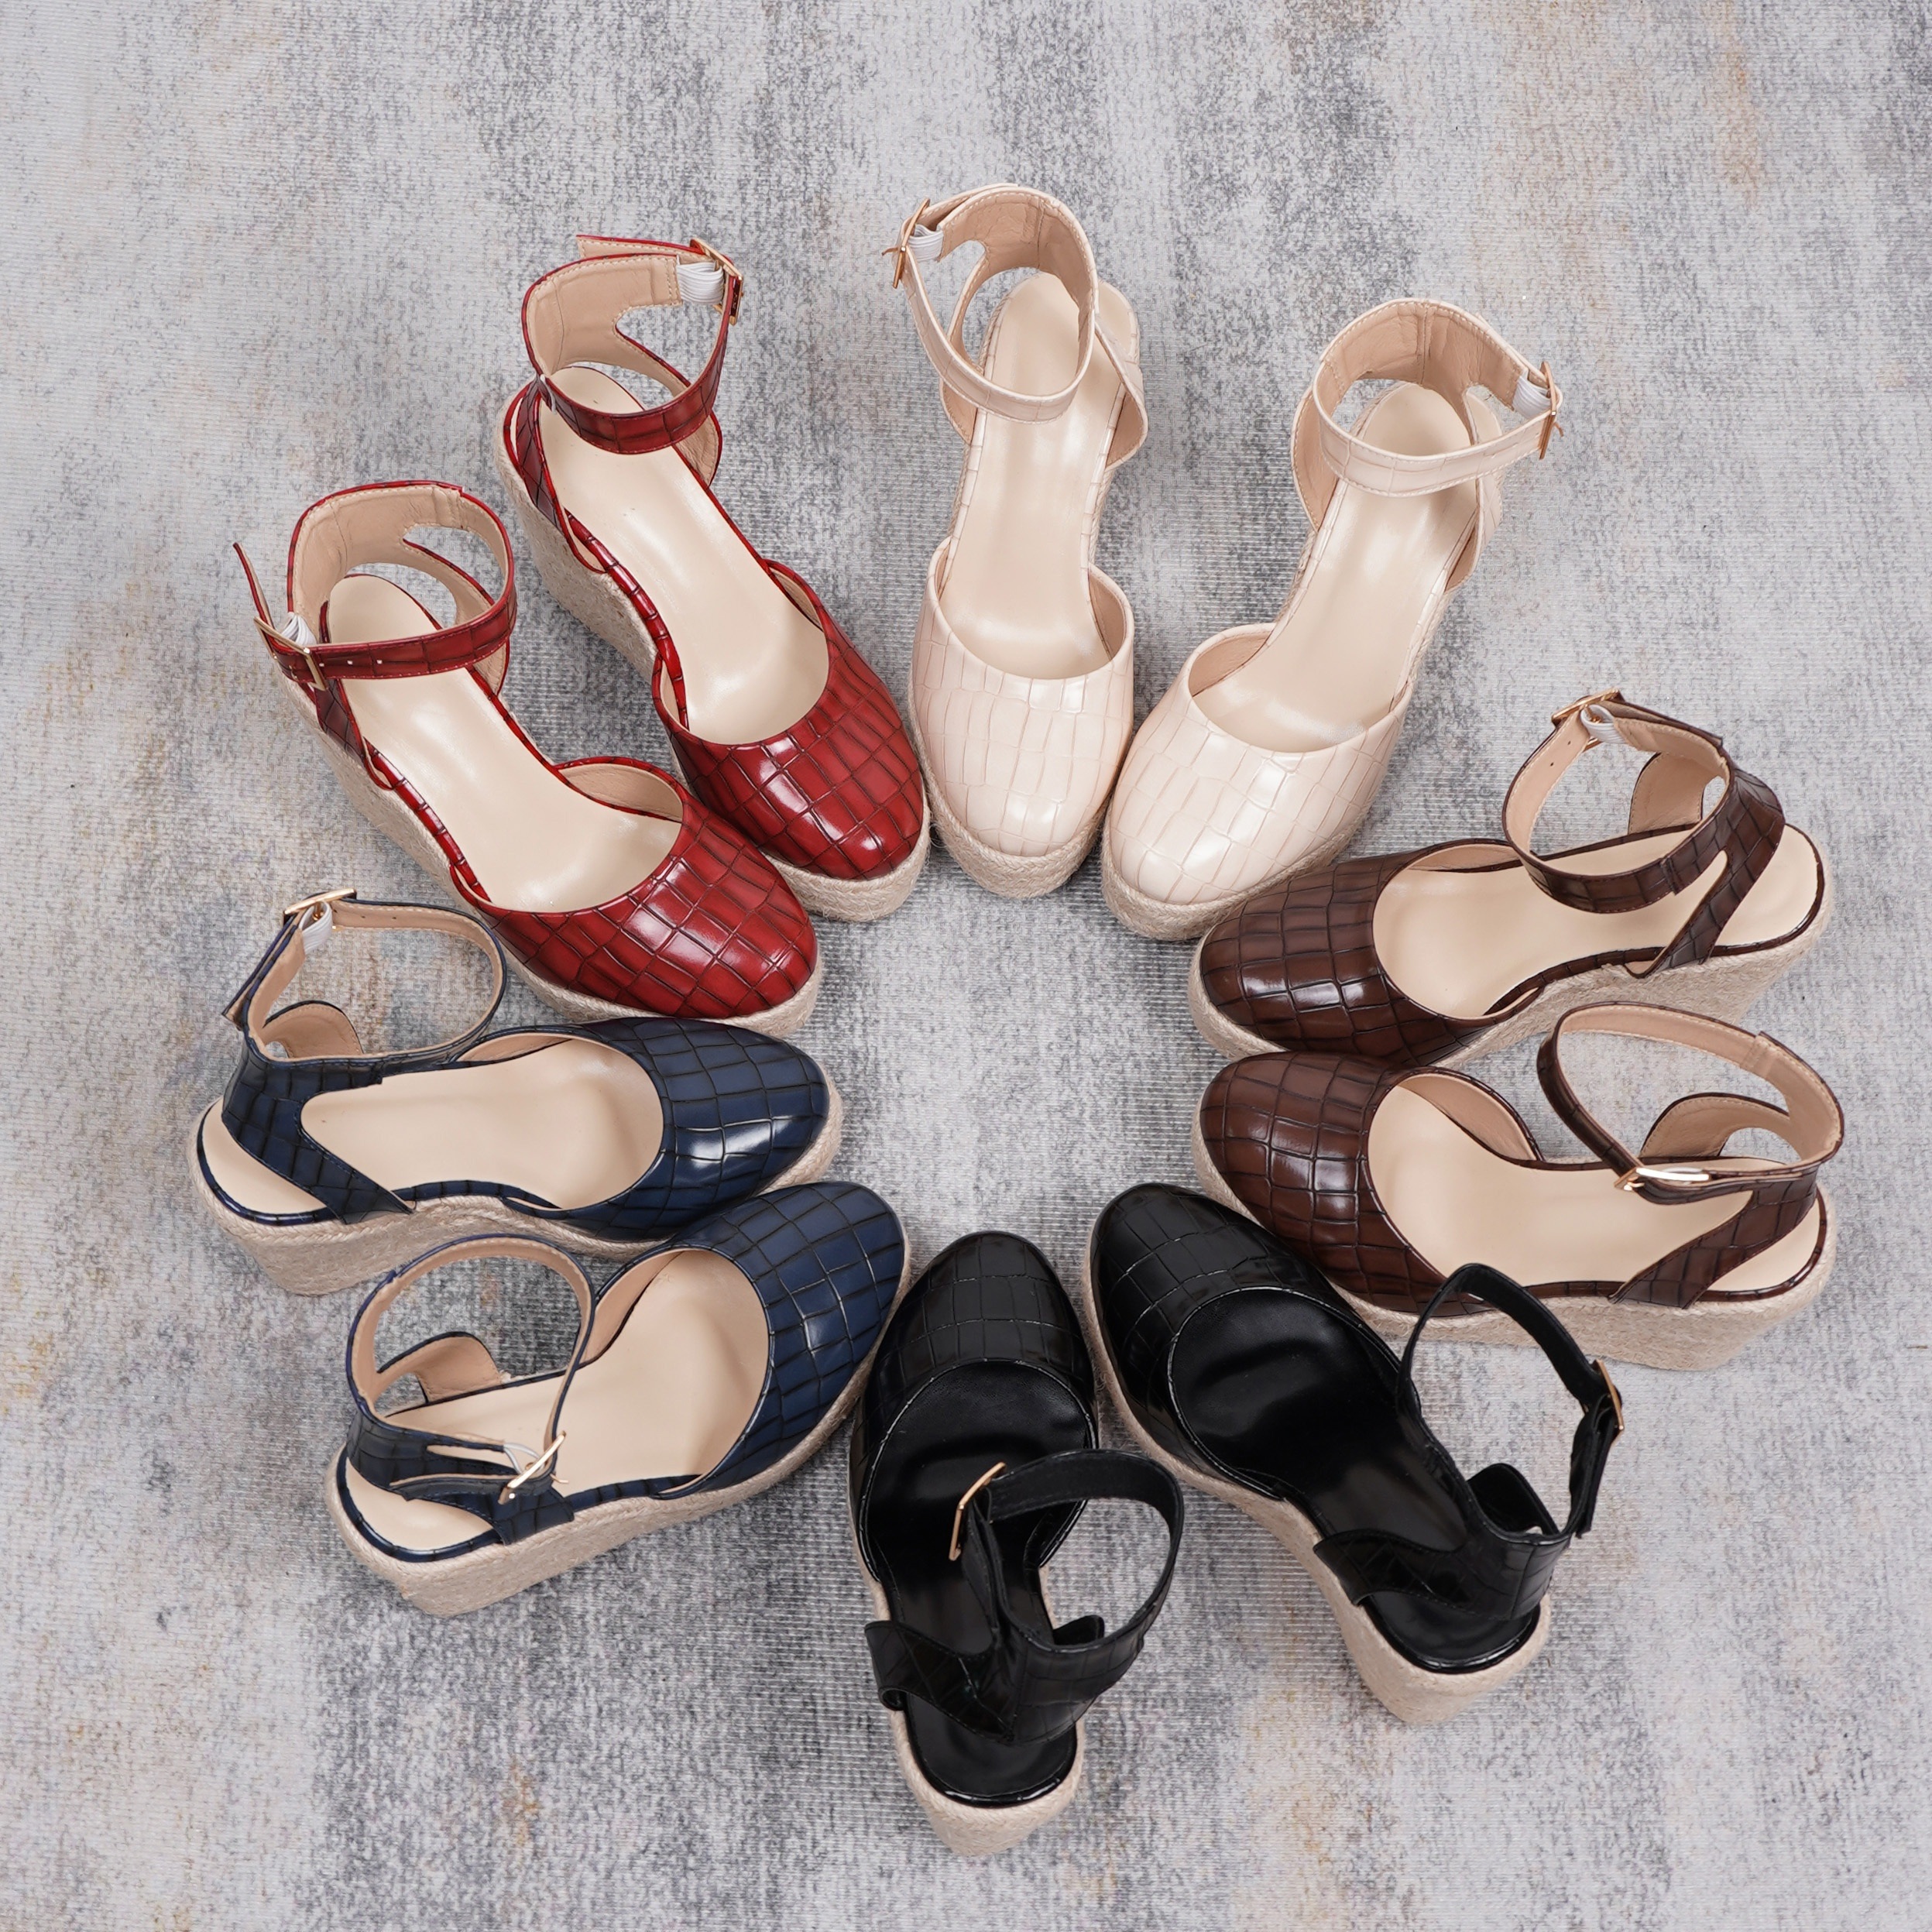 Women's Floral Pattern Wedge Sandals, Open Toe Platform Ankle Strap  Sandals, Women's Footwear